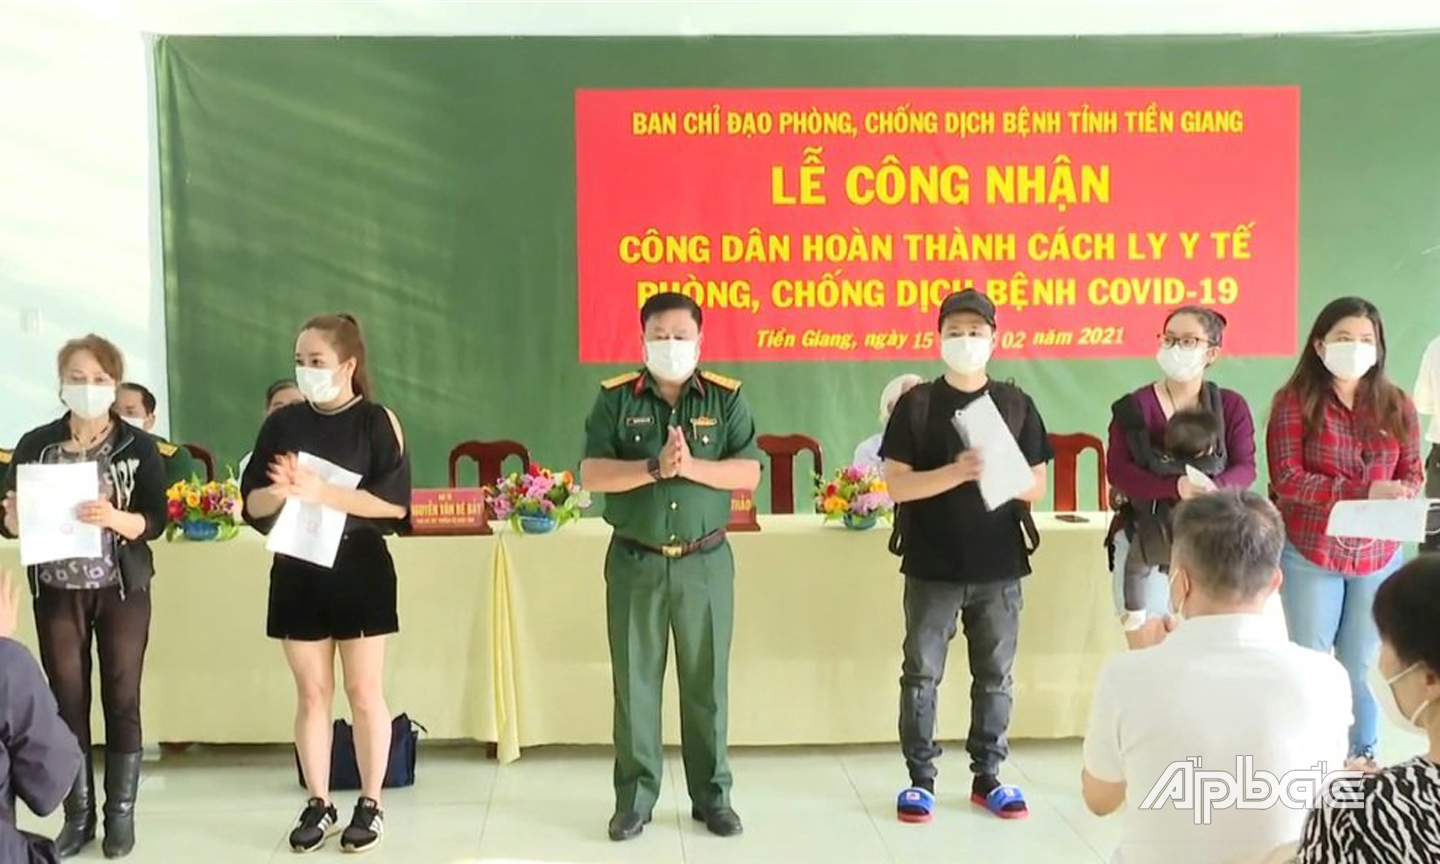 Đồng chí Nguyễn Văn Bé Bảy, Phó Chỉ huy trưởng Bộ chỉ huy quân sự tỉnh trao chứng nhận hoàn thành cách ly cho công dân